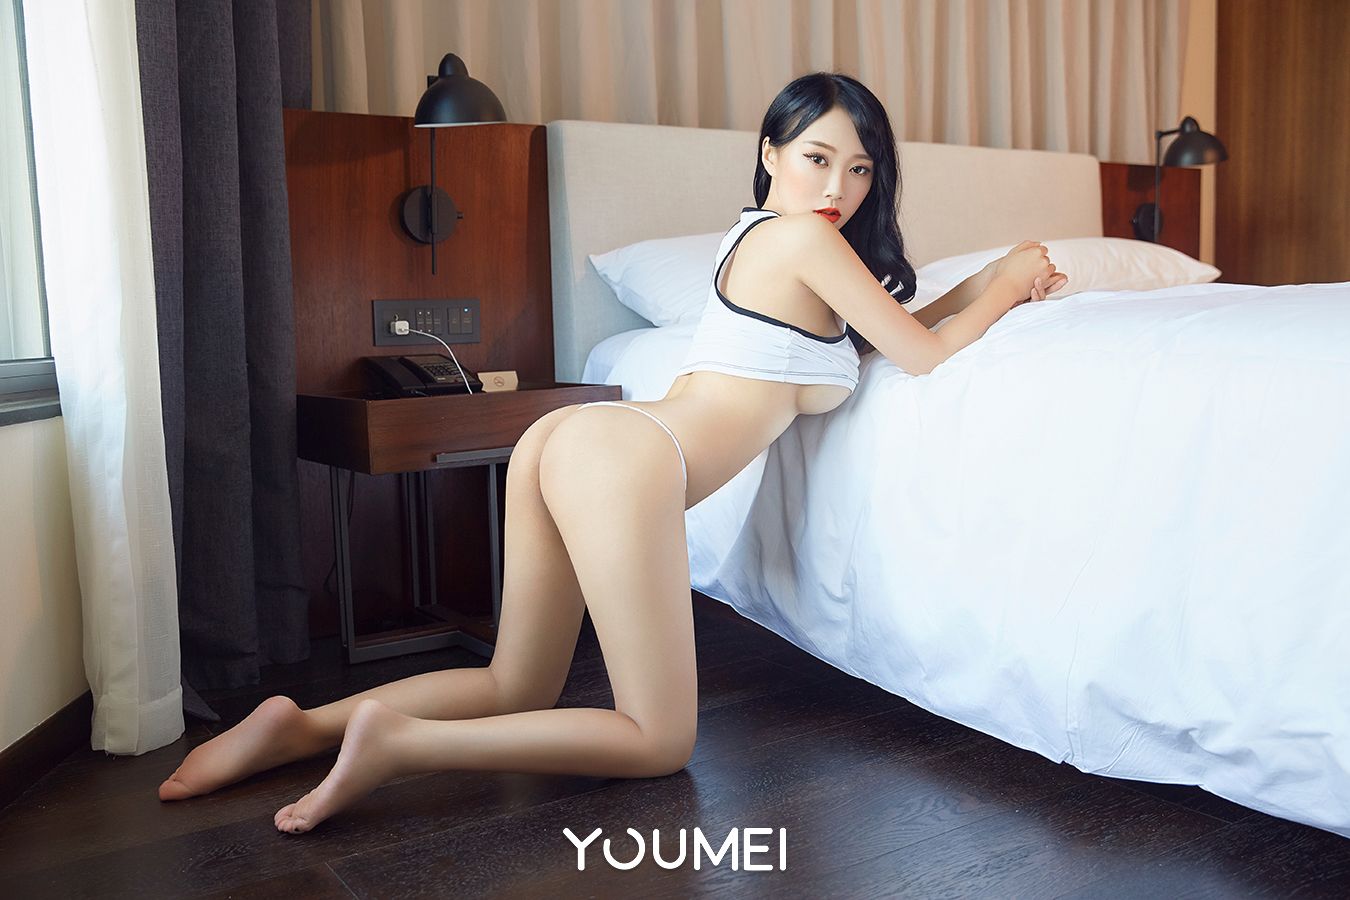 Youmei Vol. 067 He Jia Ying